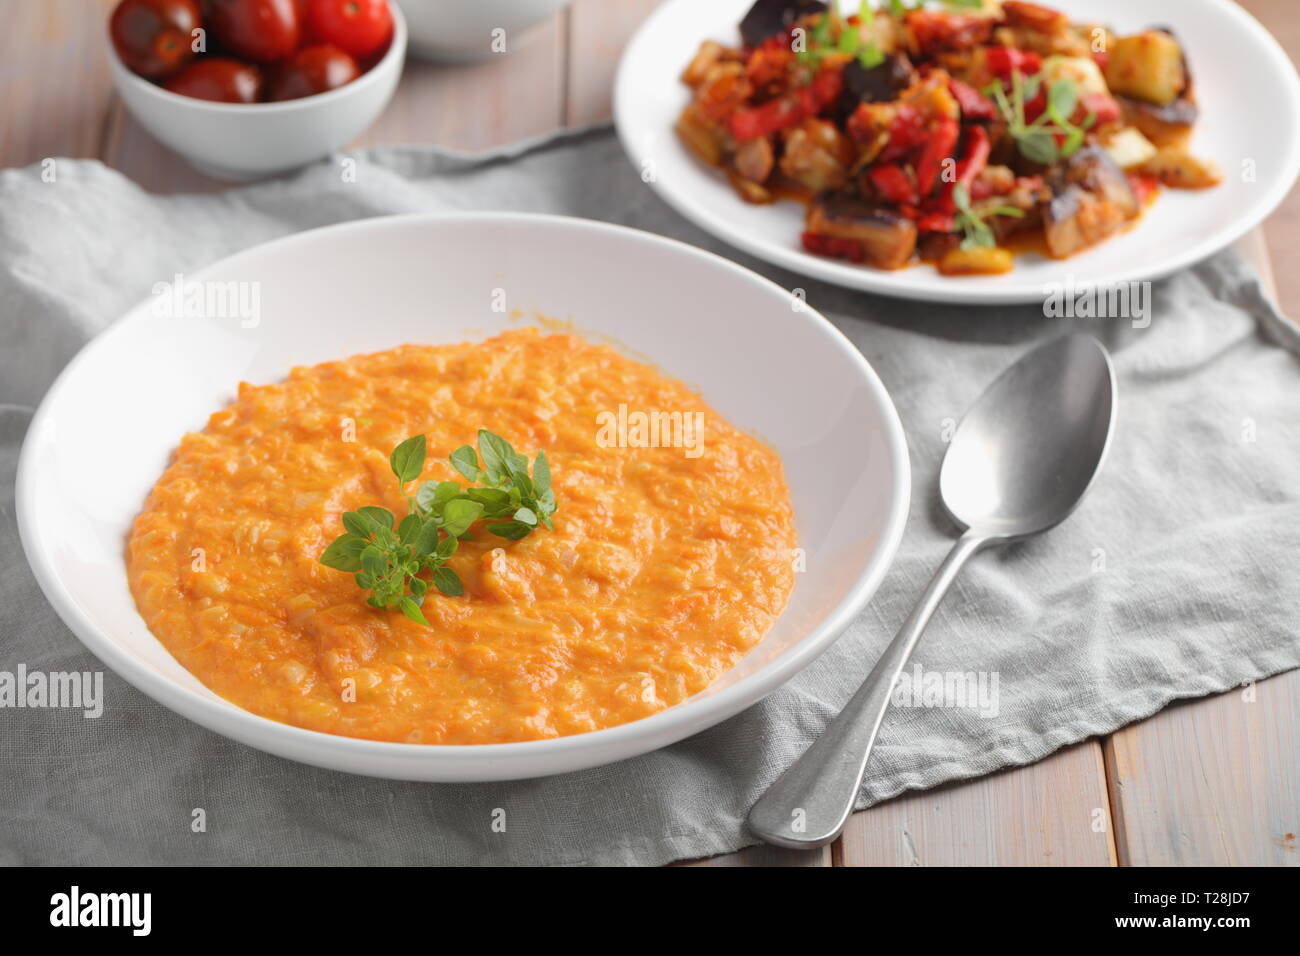 Zuppa di zucca decorato con foglia di basilico in un pranzo vegetariano Foto Stock